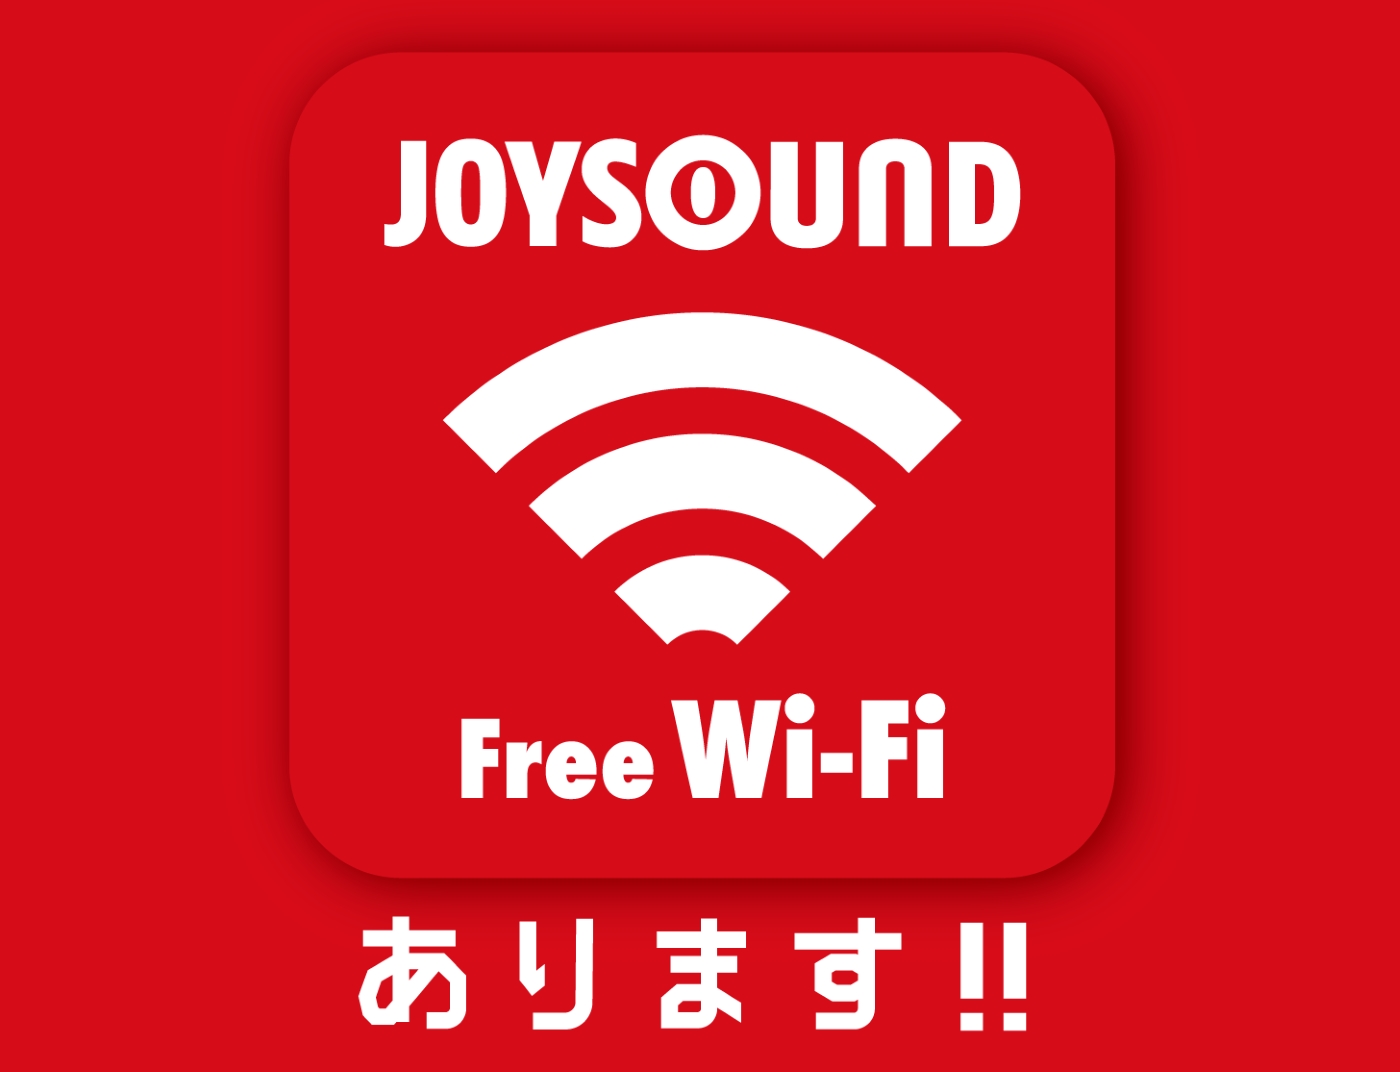 無料無線lanサービス Joysound Free Wi Fi で カラオケがより快適に 18年秋の実用化に向け 全国108店舗のjoysound 直営店で実証実験をスタート 株式会社エクシングのプレスリリース